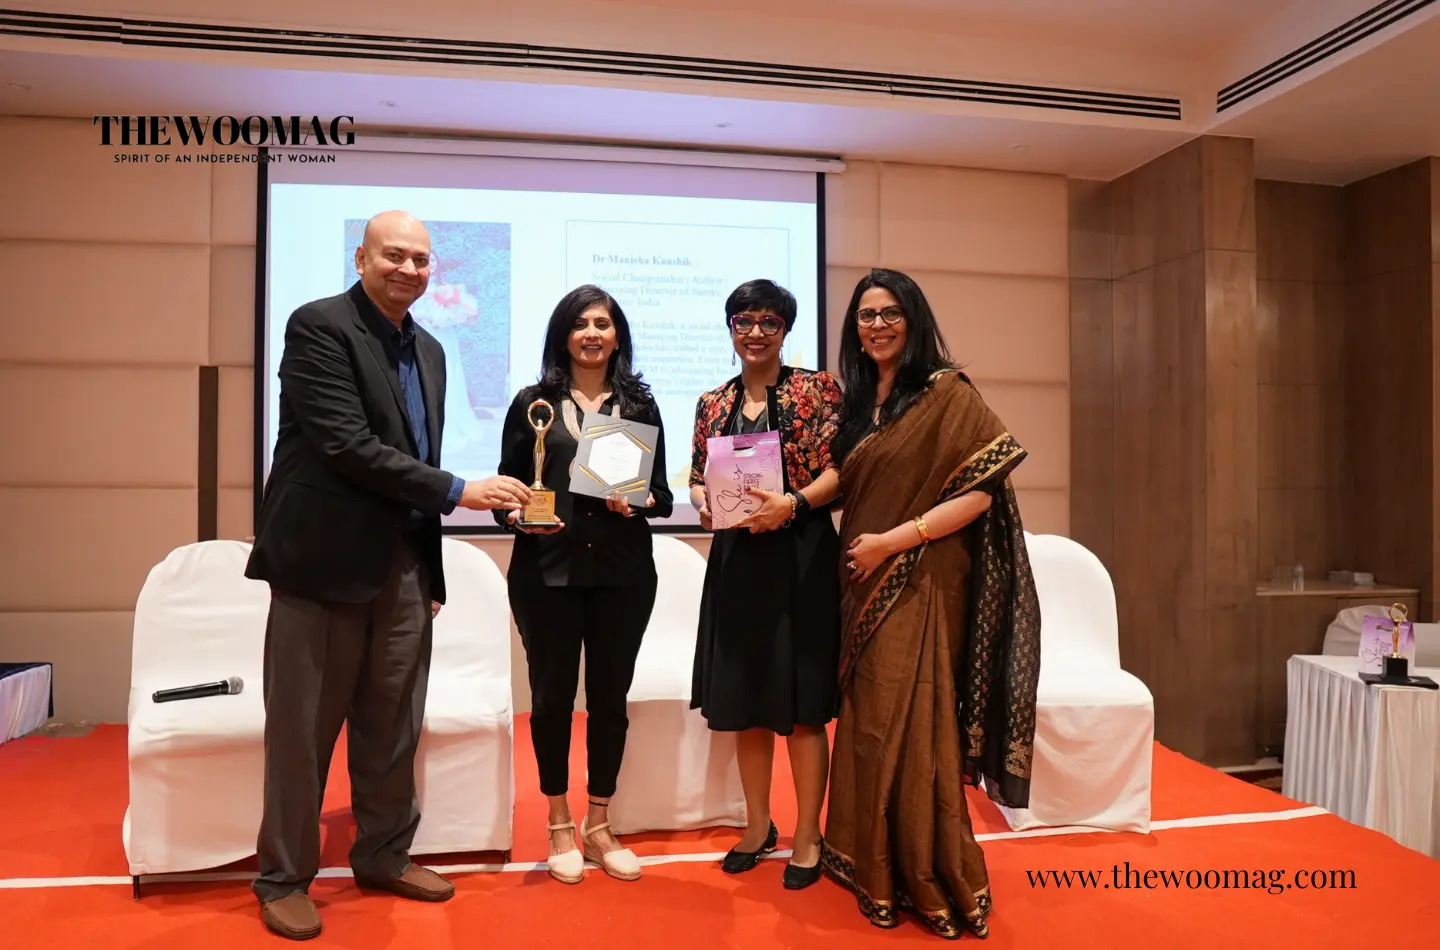 cover-Manisha-Kaushik-receiving-award-himanshi-lydia-singh-at-unstoppable-summit-with-Nina-Benjamin.webp